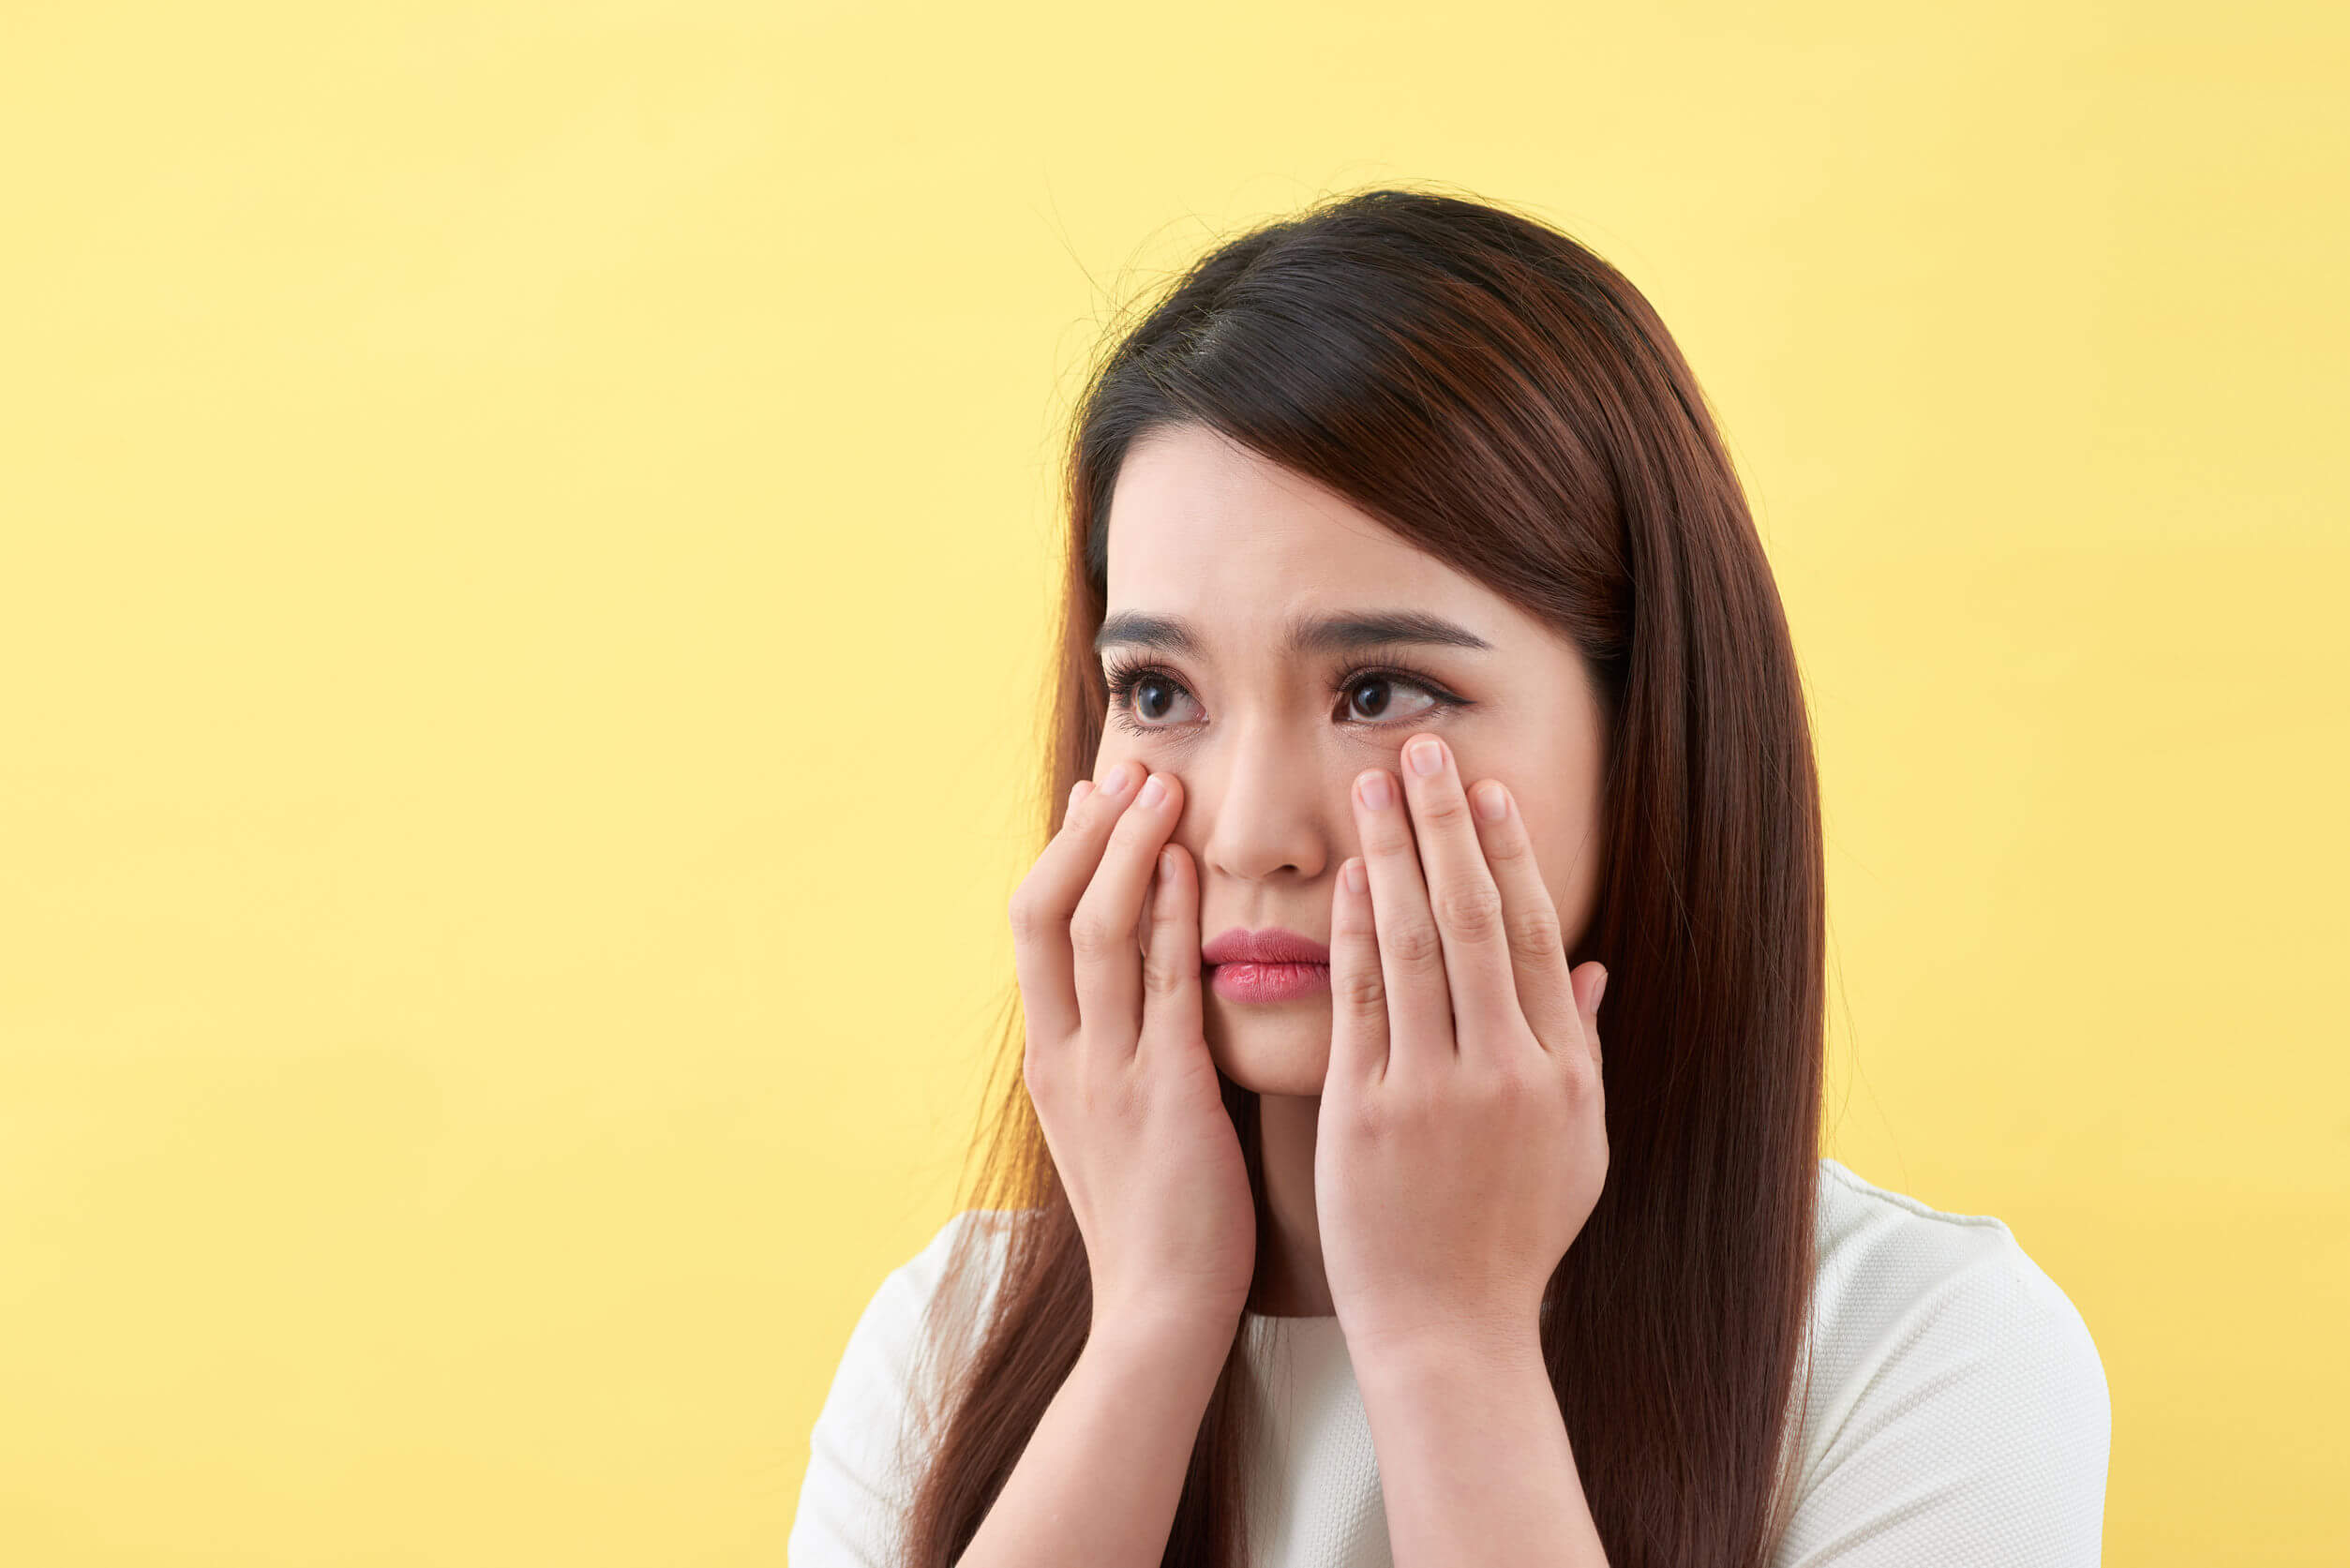 I segni e i sintomi dell'acne sono causa di scarsa autostima